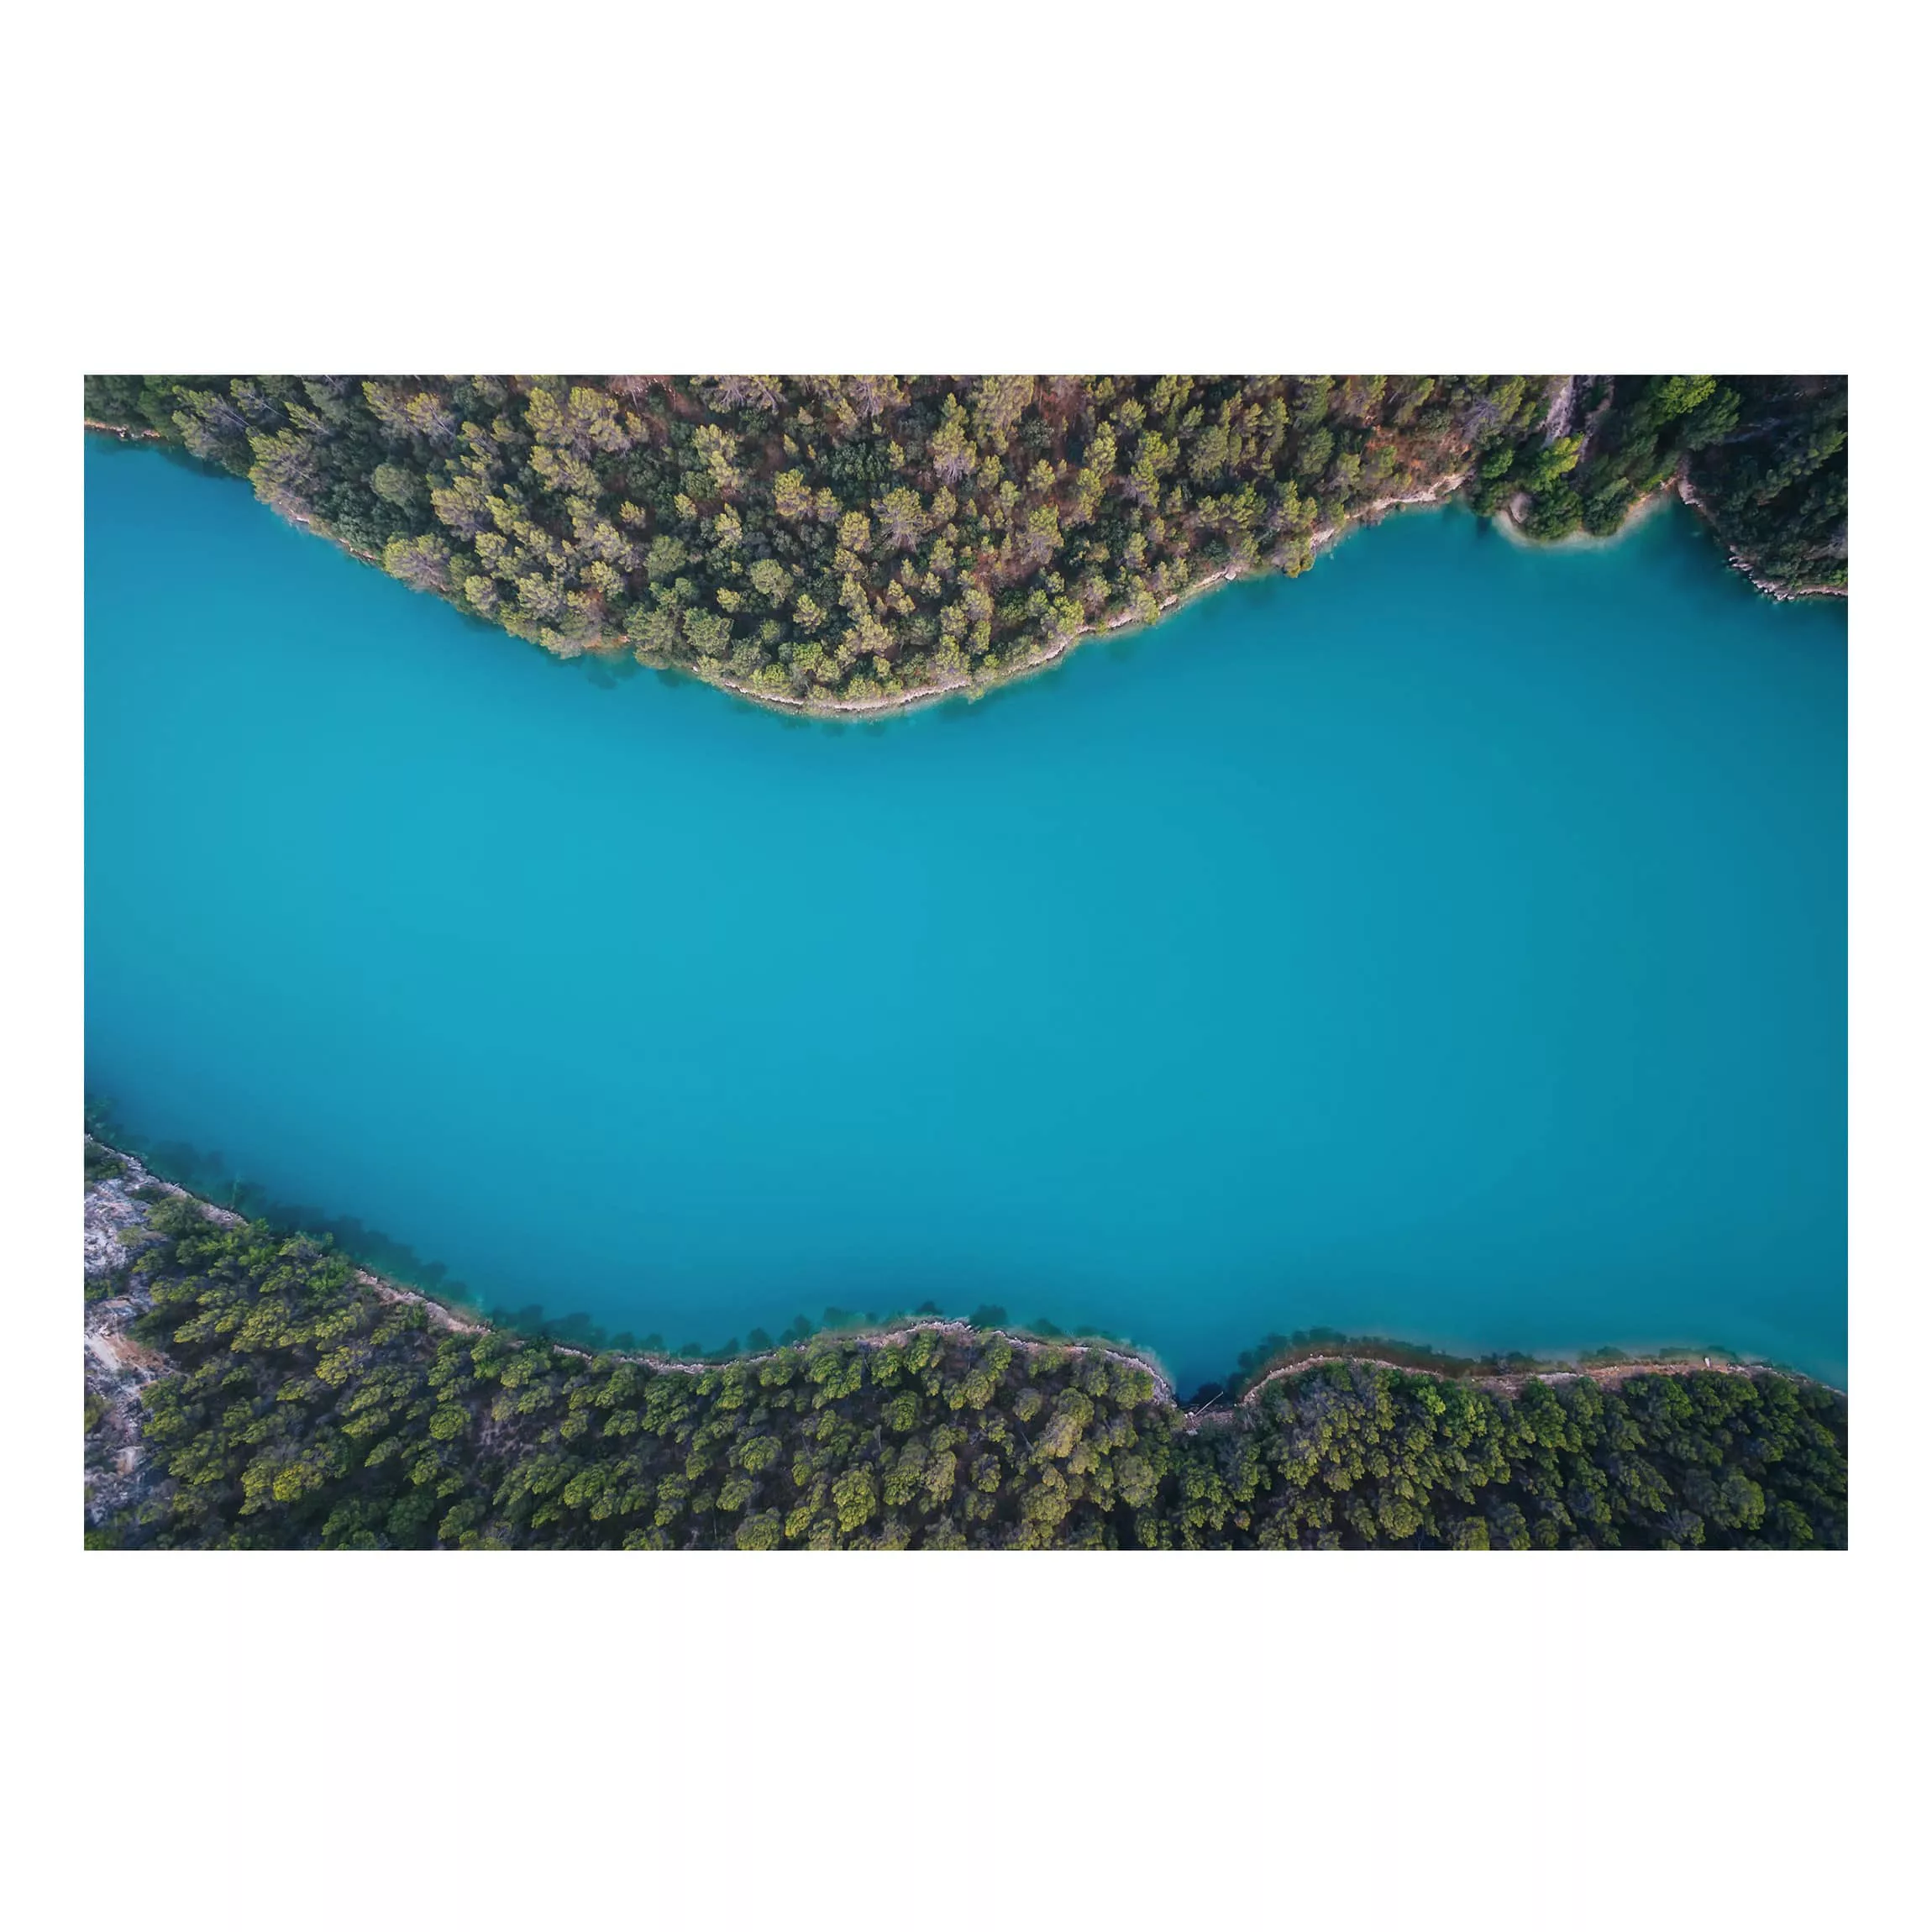 Alu-Dibond Bild Natur & Landschaft - Querformat 3:2 Luftbild - Tiefblauer S günstig online kaufen